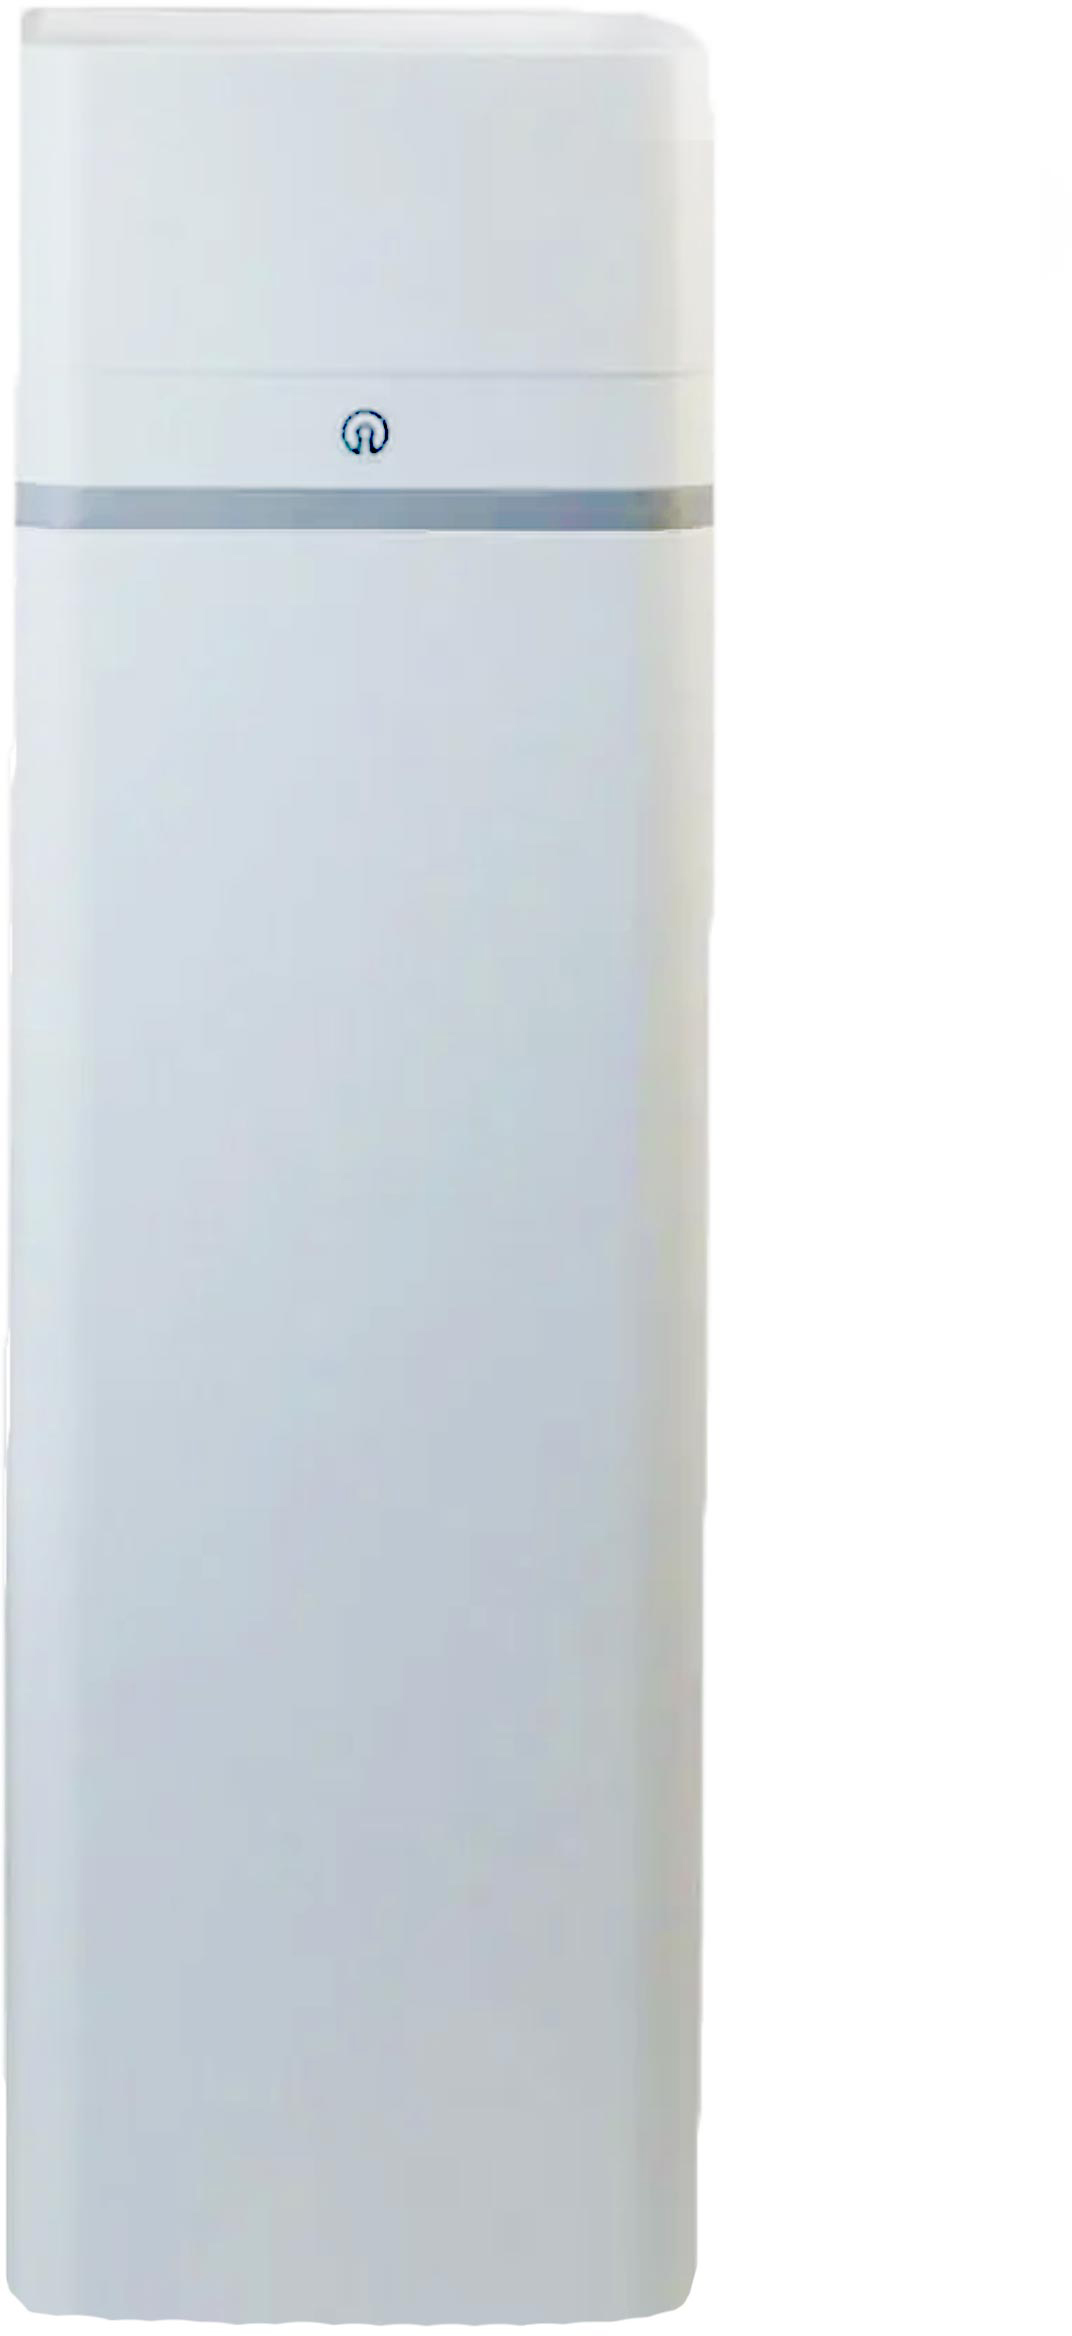 Система очистки воды FITaqua Saturn-XL 1035  в интернет-магазине, главное фото